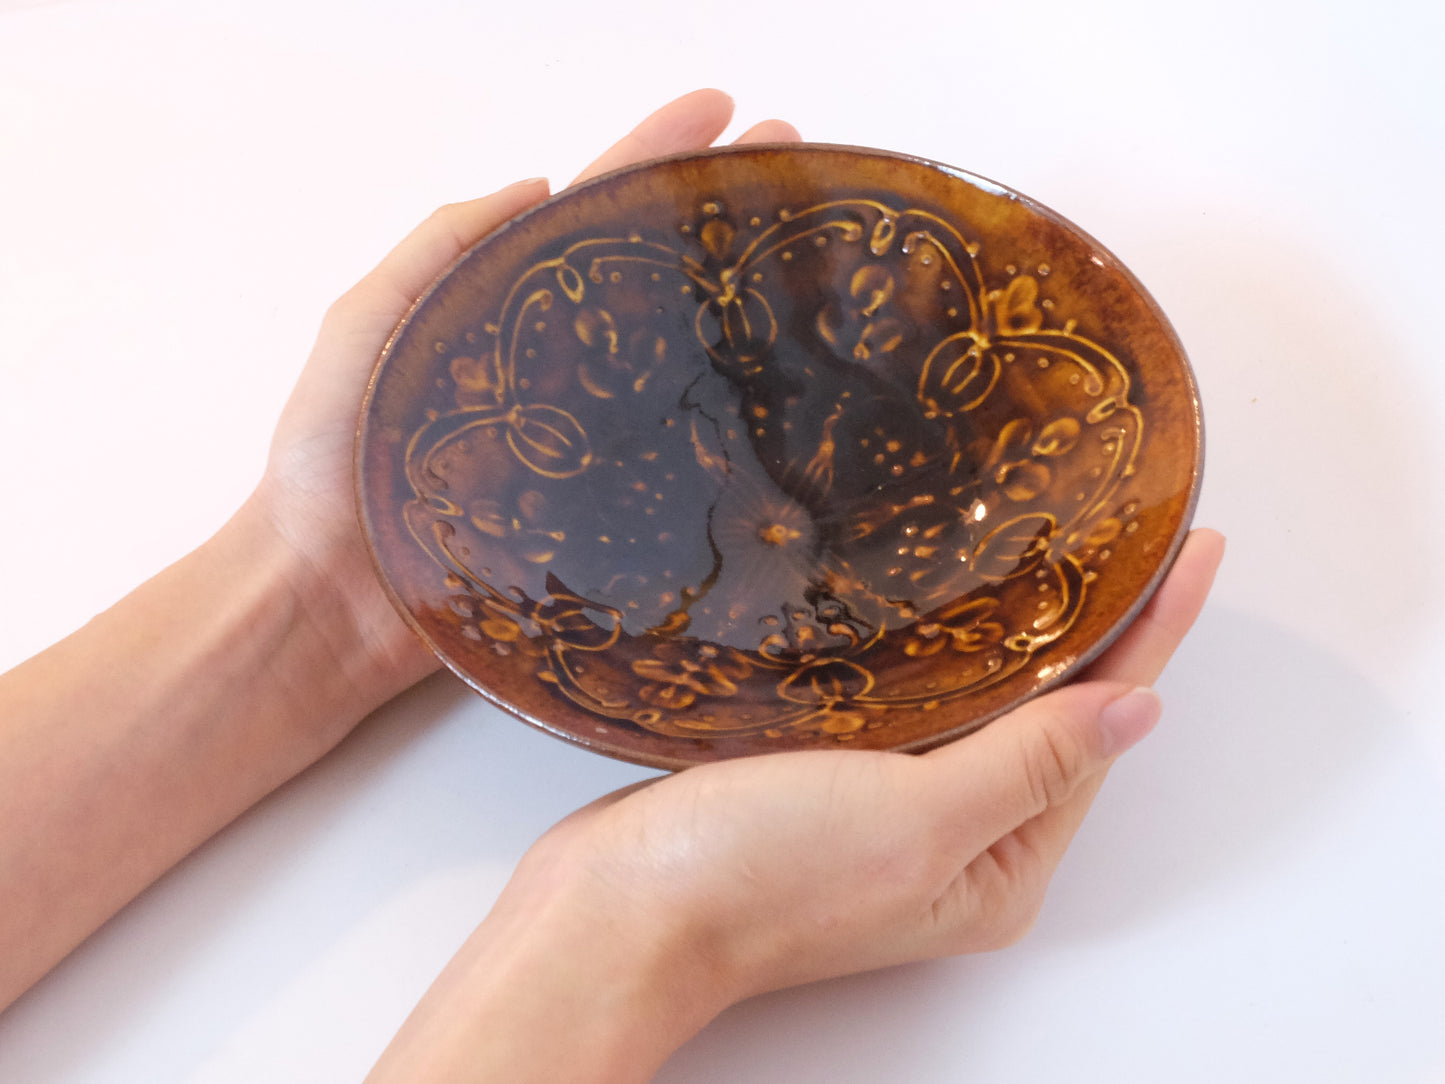 Small Caramel Glazed Bowls by Aya Kondo